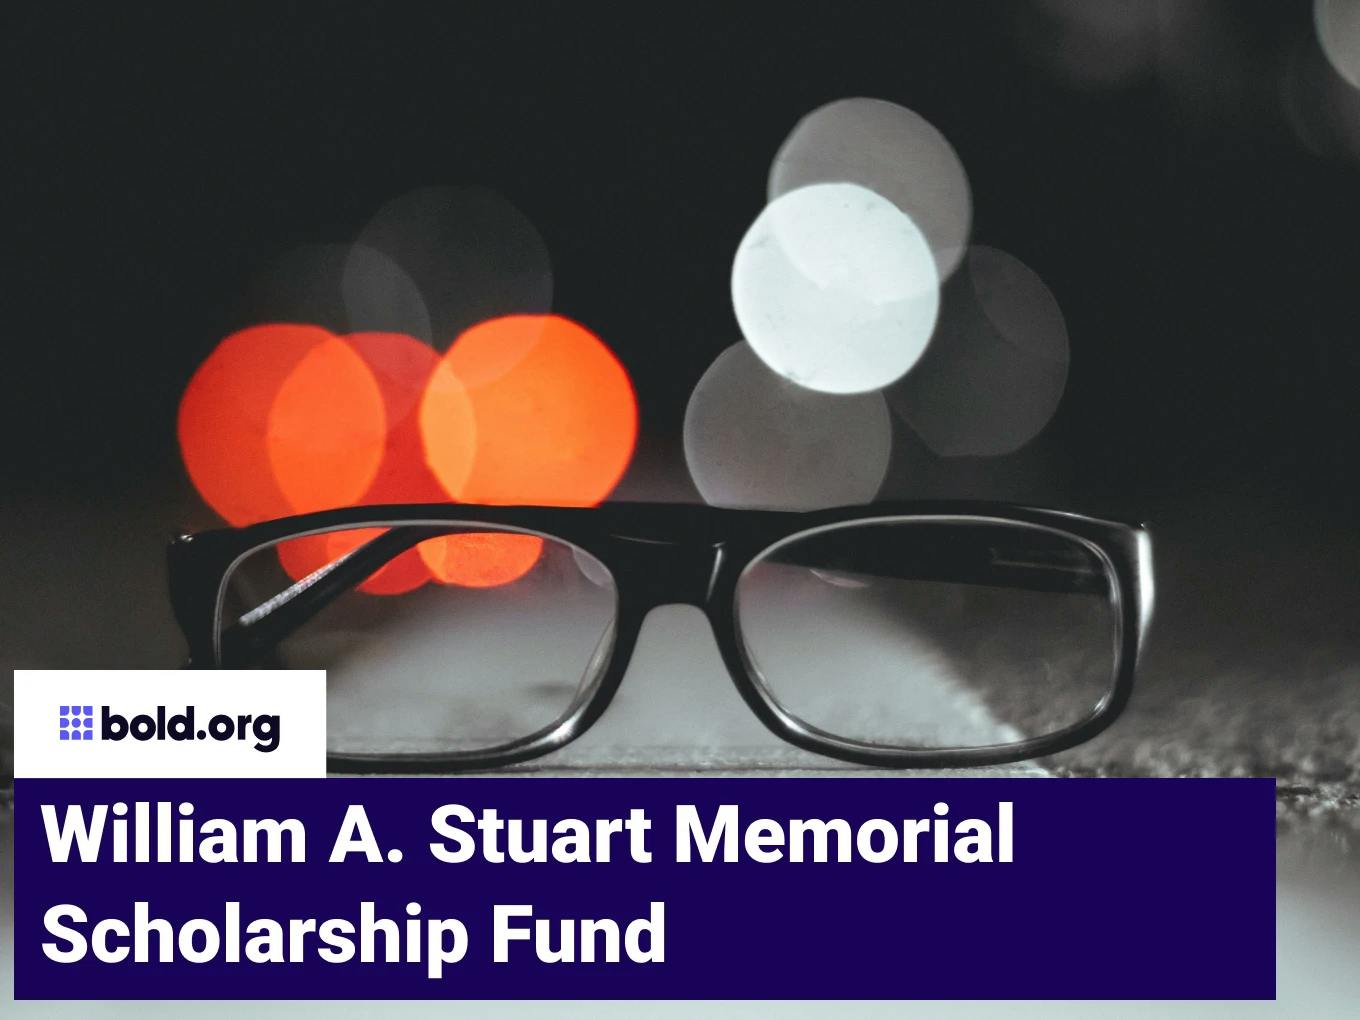 William A. Stuart Memorial Scholarship Fund